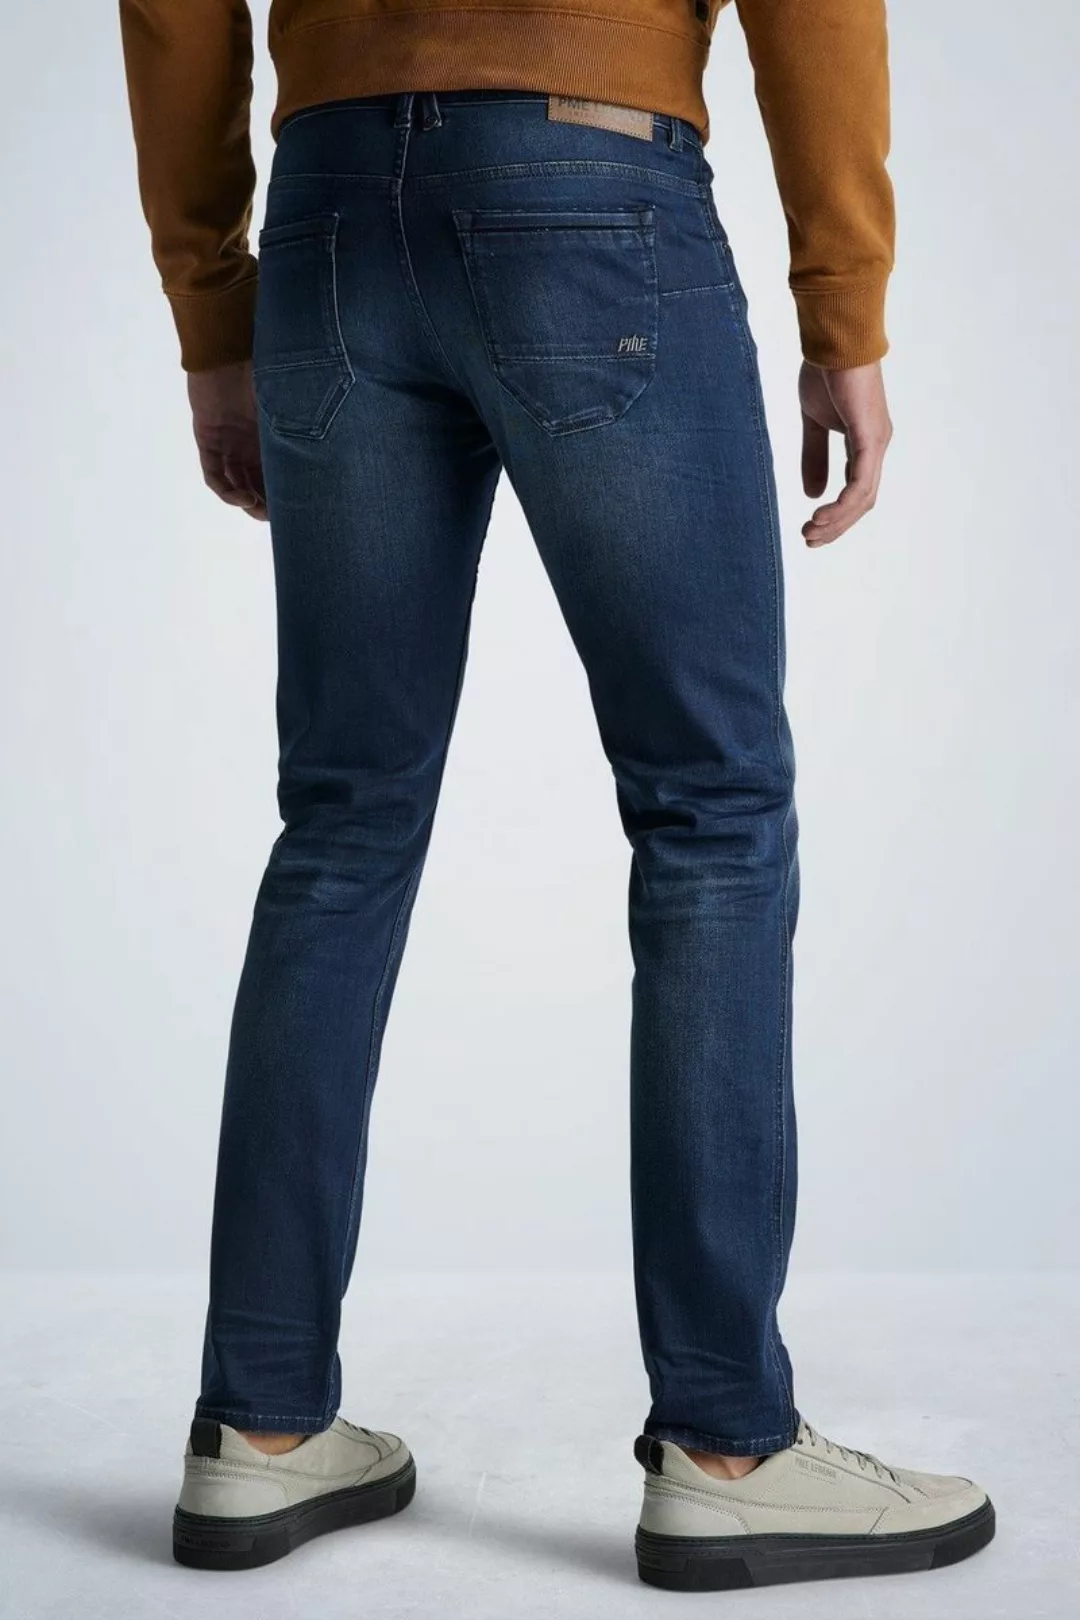 PME Legend Nightflight Jeans Dunkelblau NBW - Größe W 33 - L 36 günstig online kaufen